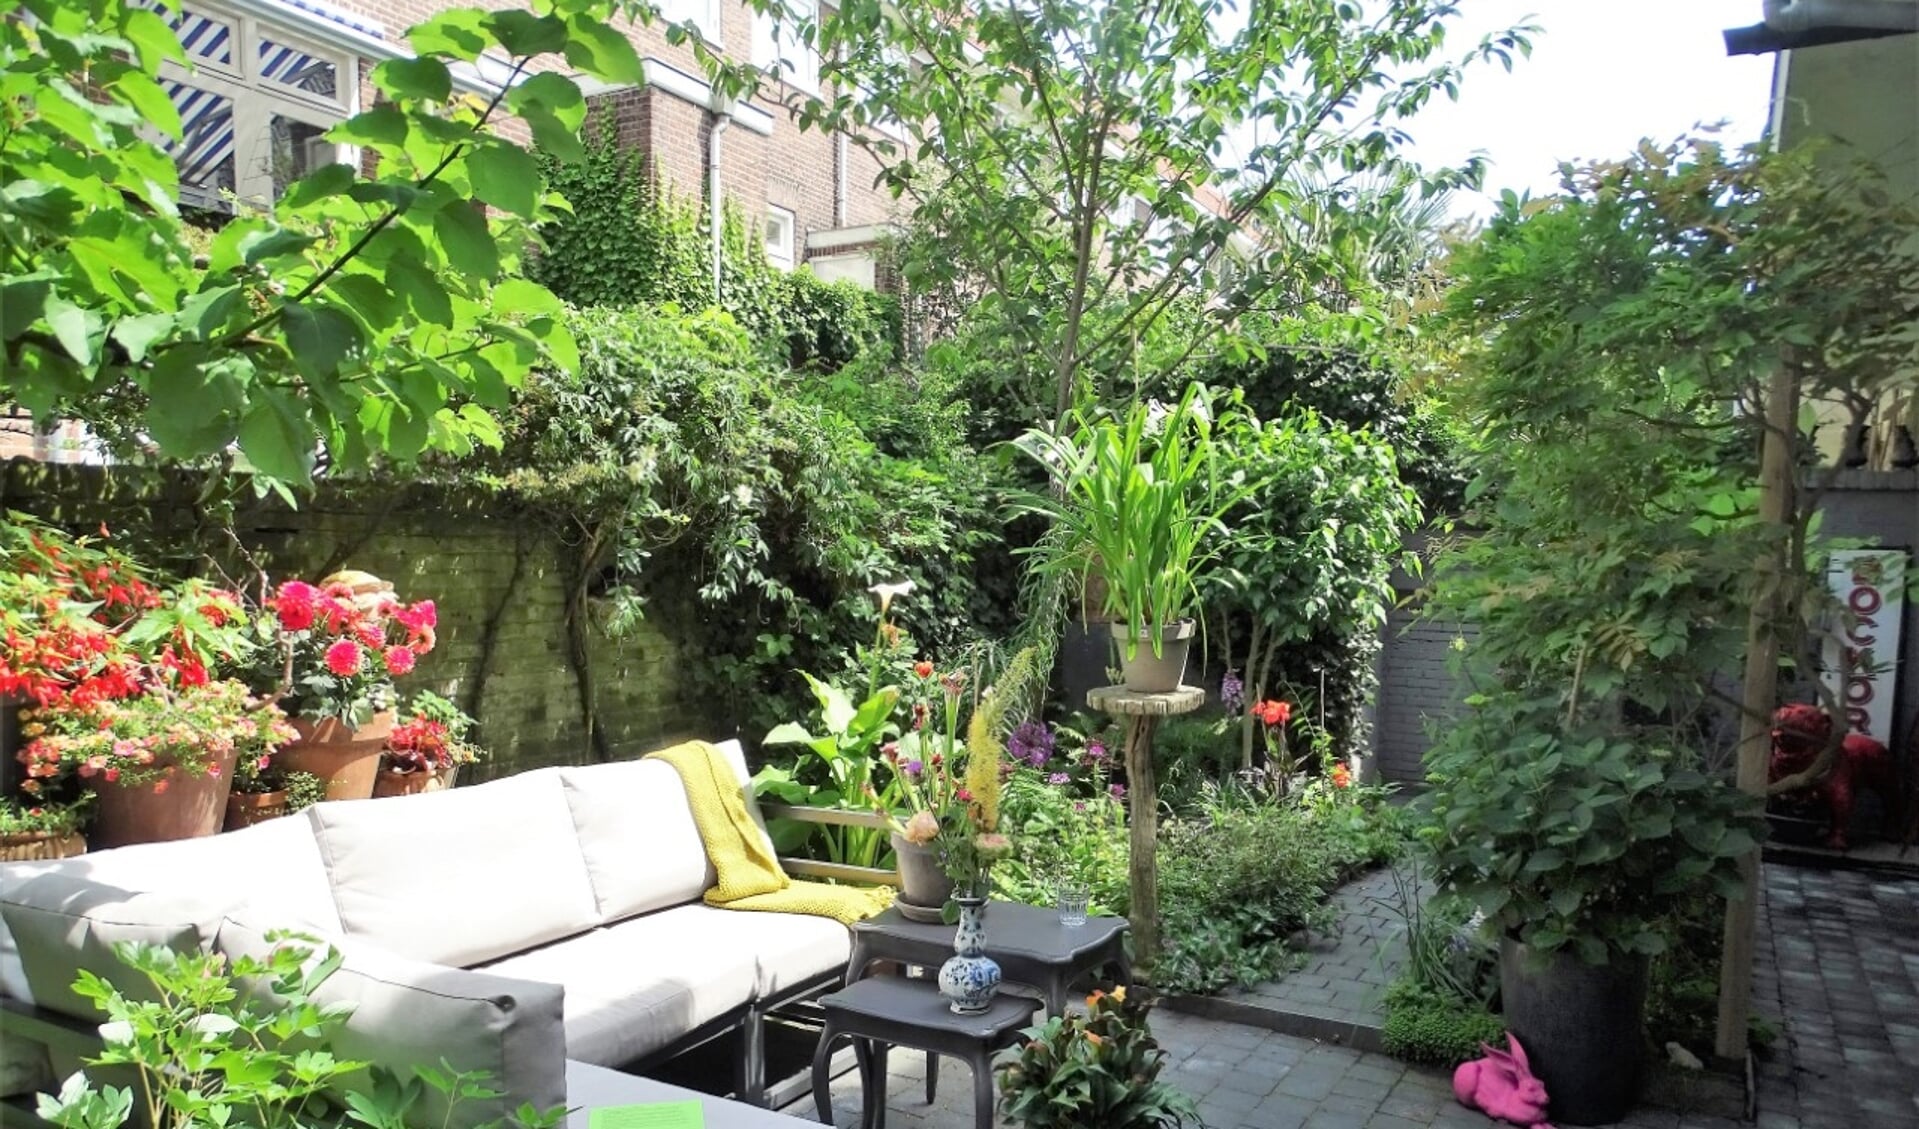 Grote én kleine tuinen achter historische panden in Den Bosch openen op zondag 19 juni hun poorten.